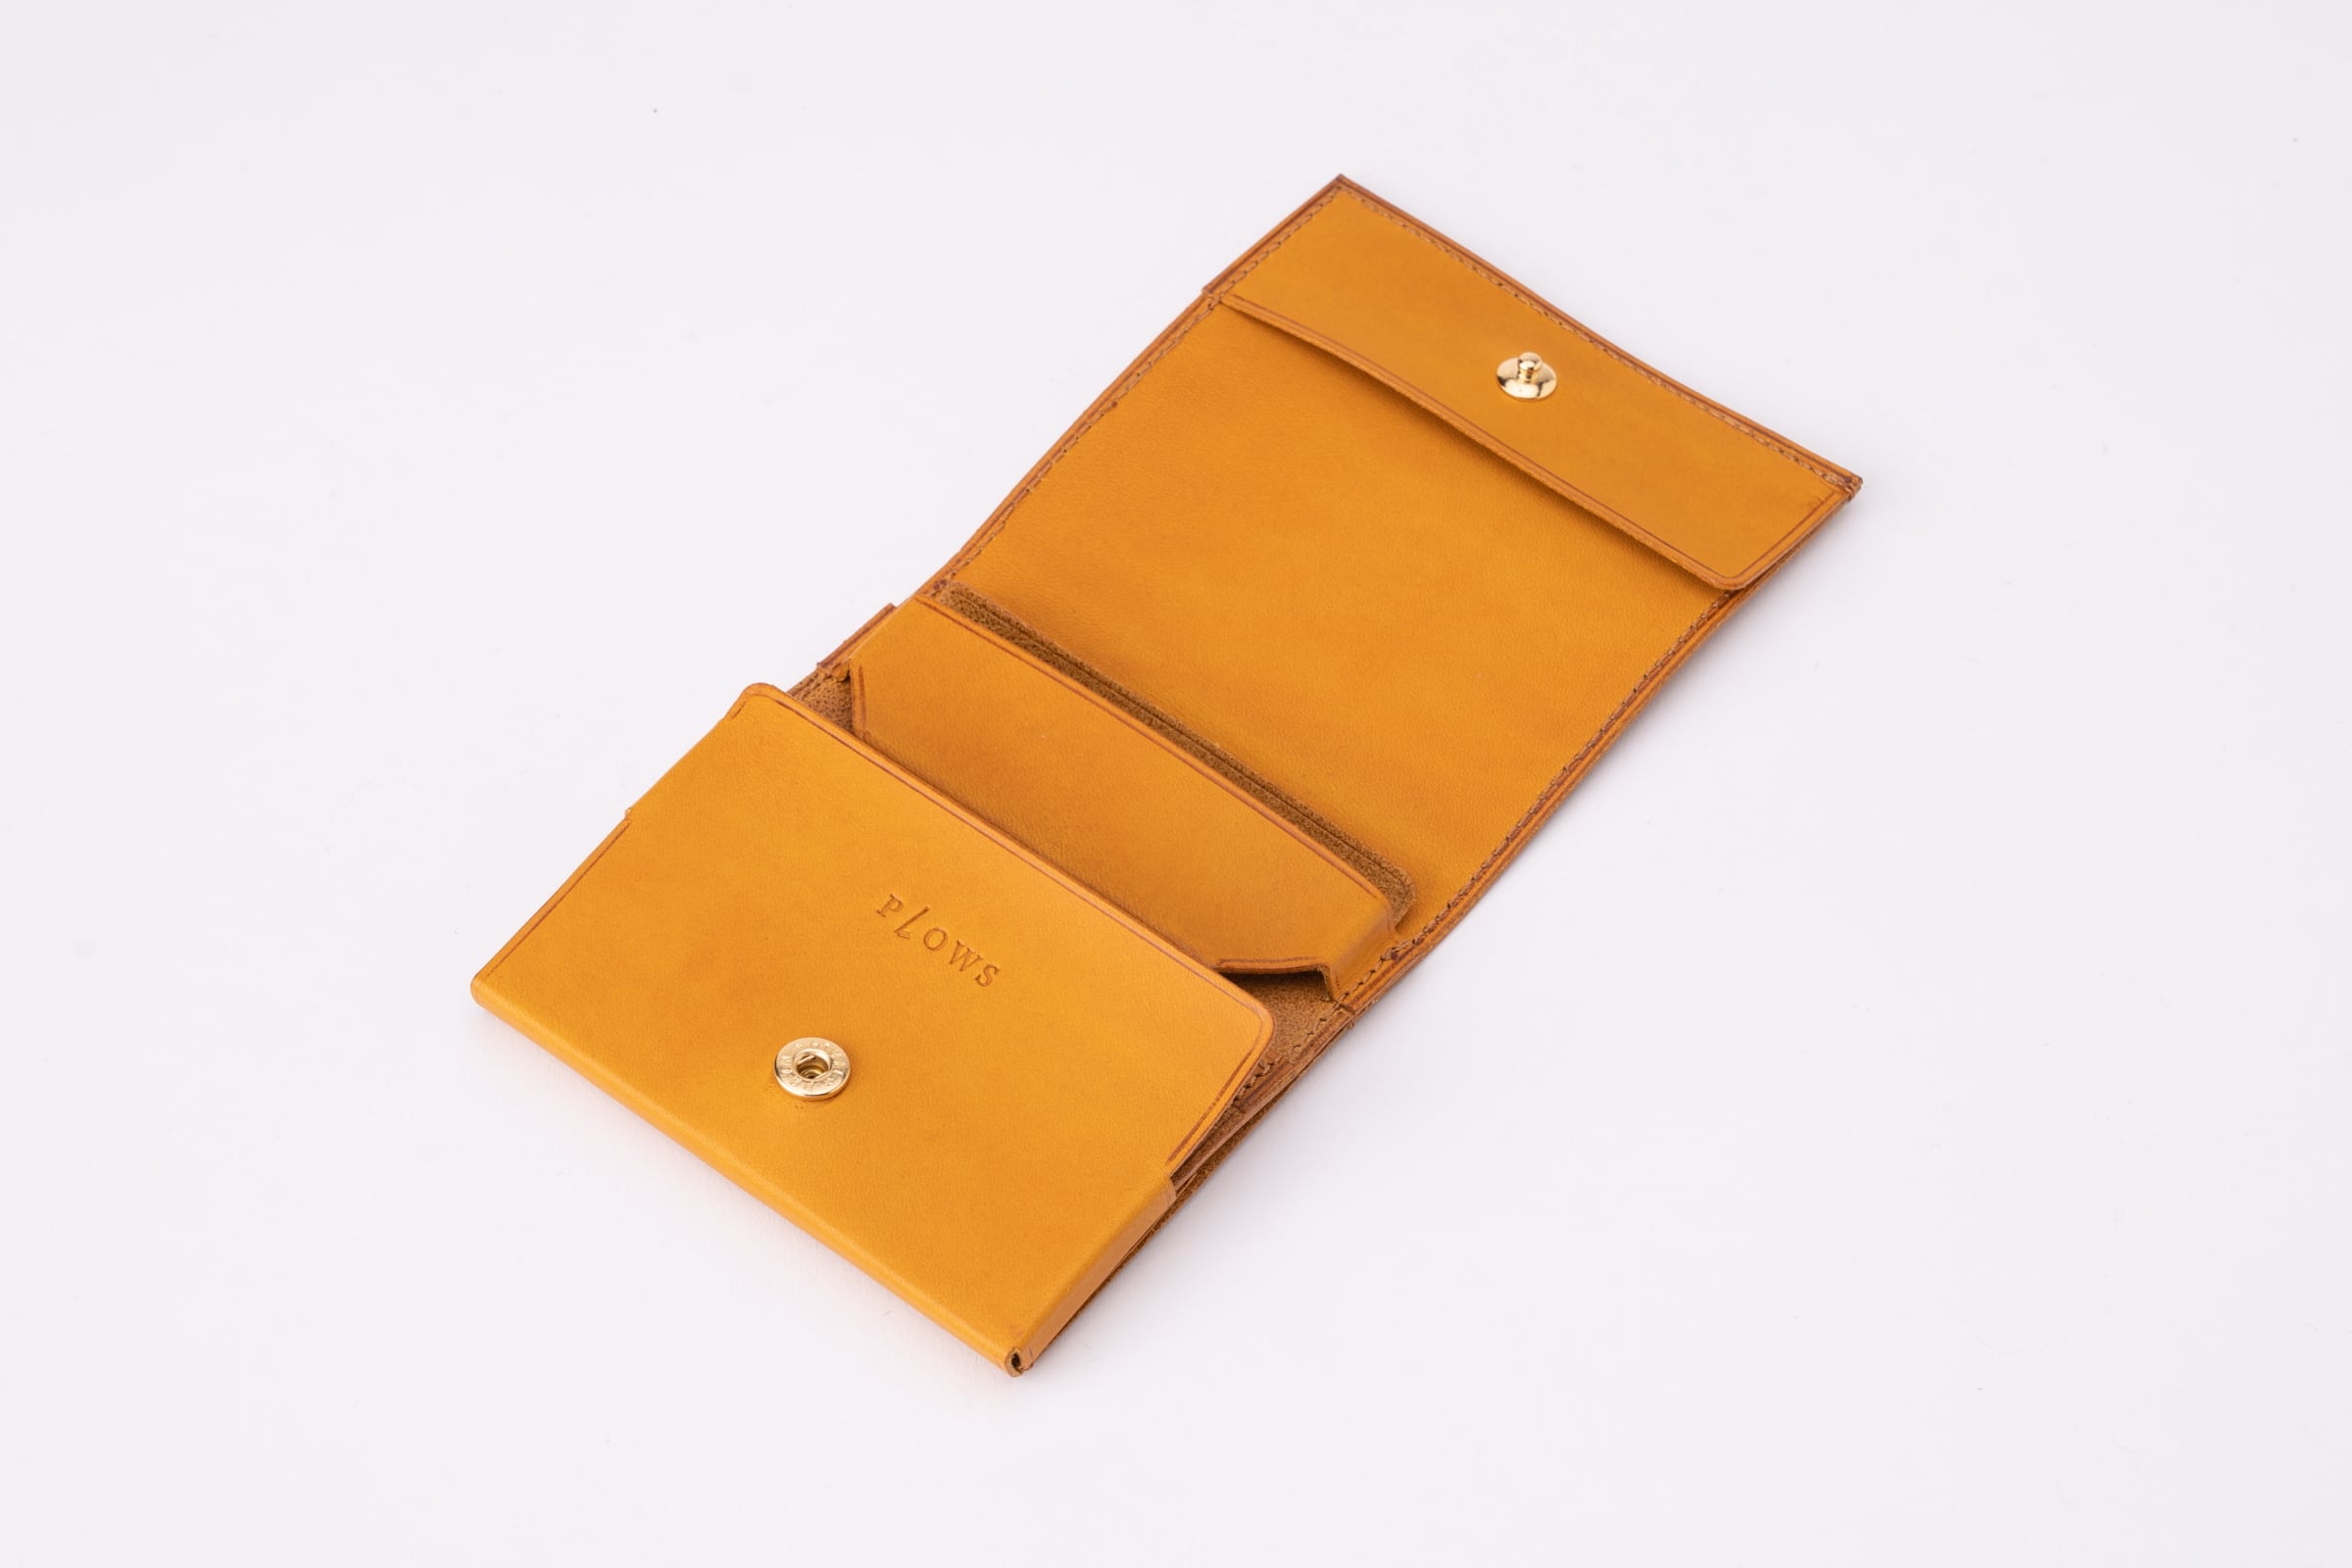 もっと 小さく薄い財布 dritto 2 thin – PLOWS